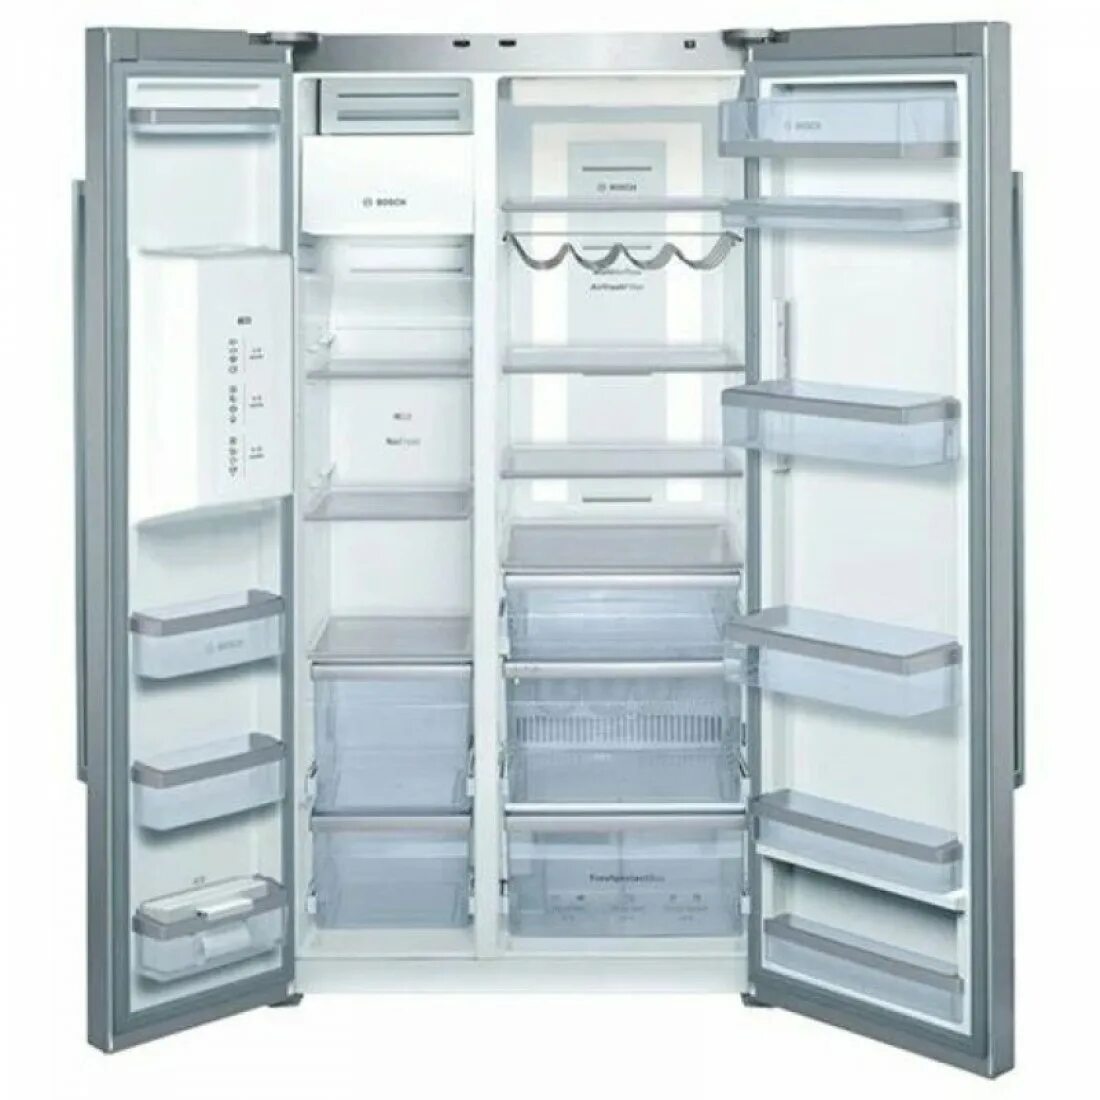 Интернет магазин холодильников в москве недорого. Холодильник Bosch kad62p91. Холодильник Bosch Side by Side. Холодильник Bosch kan58a50. Bosch Multi Air Flow холодильник.